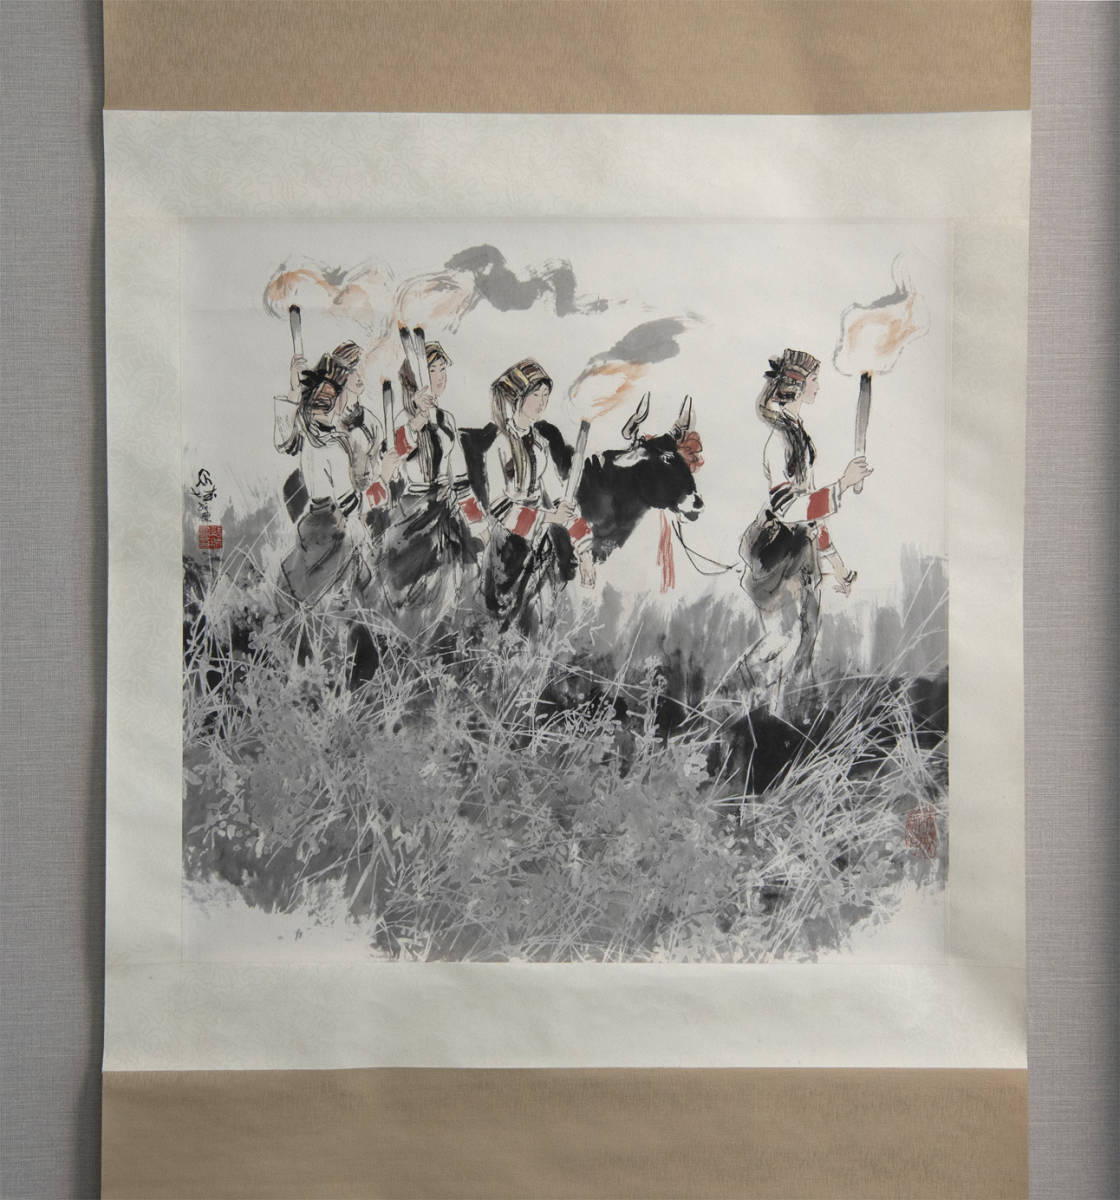 张绍Castle, 1988, Bonfire, Colored paper, Standing scroll, Exhibited at the China Jiade Exhibition, Guaranteed to be authentic, Chinese, Painting, Contemporary art, Artwork, book, hanging scroll